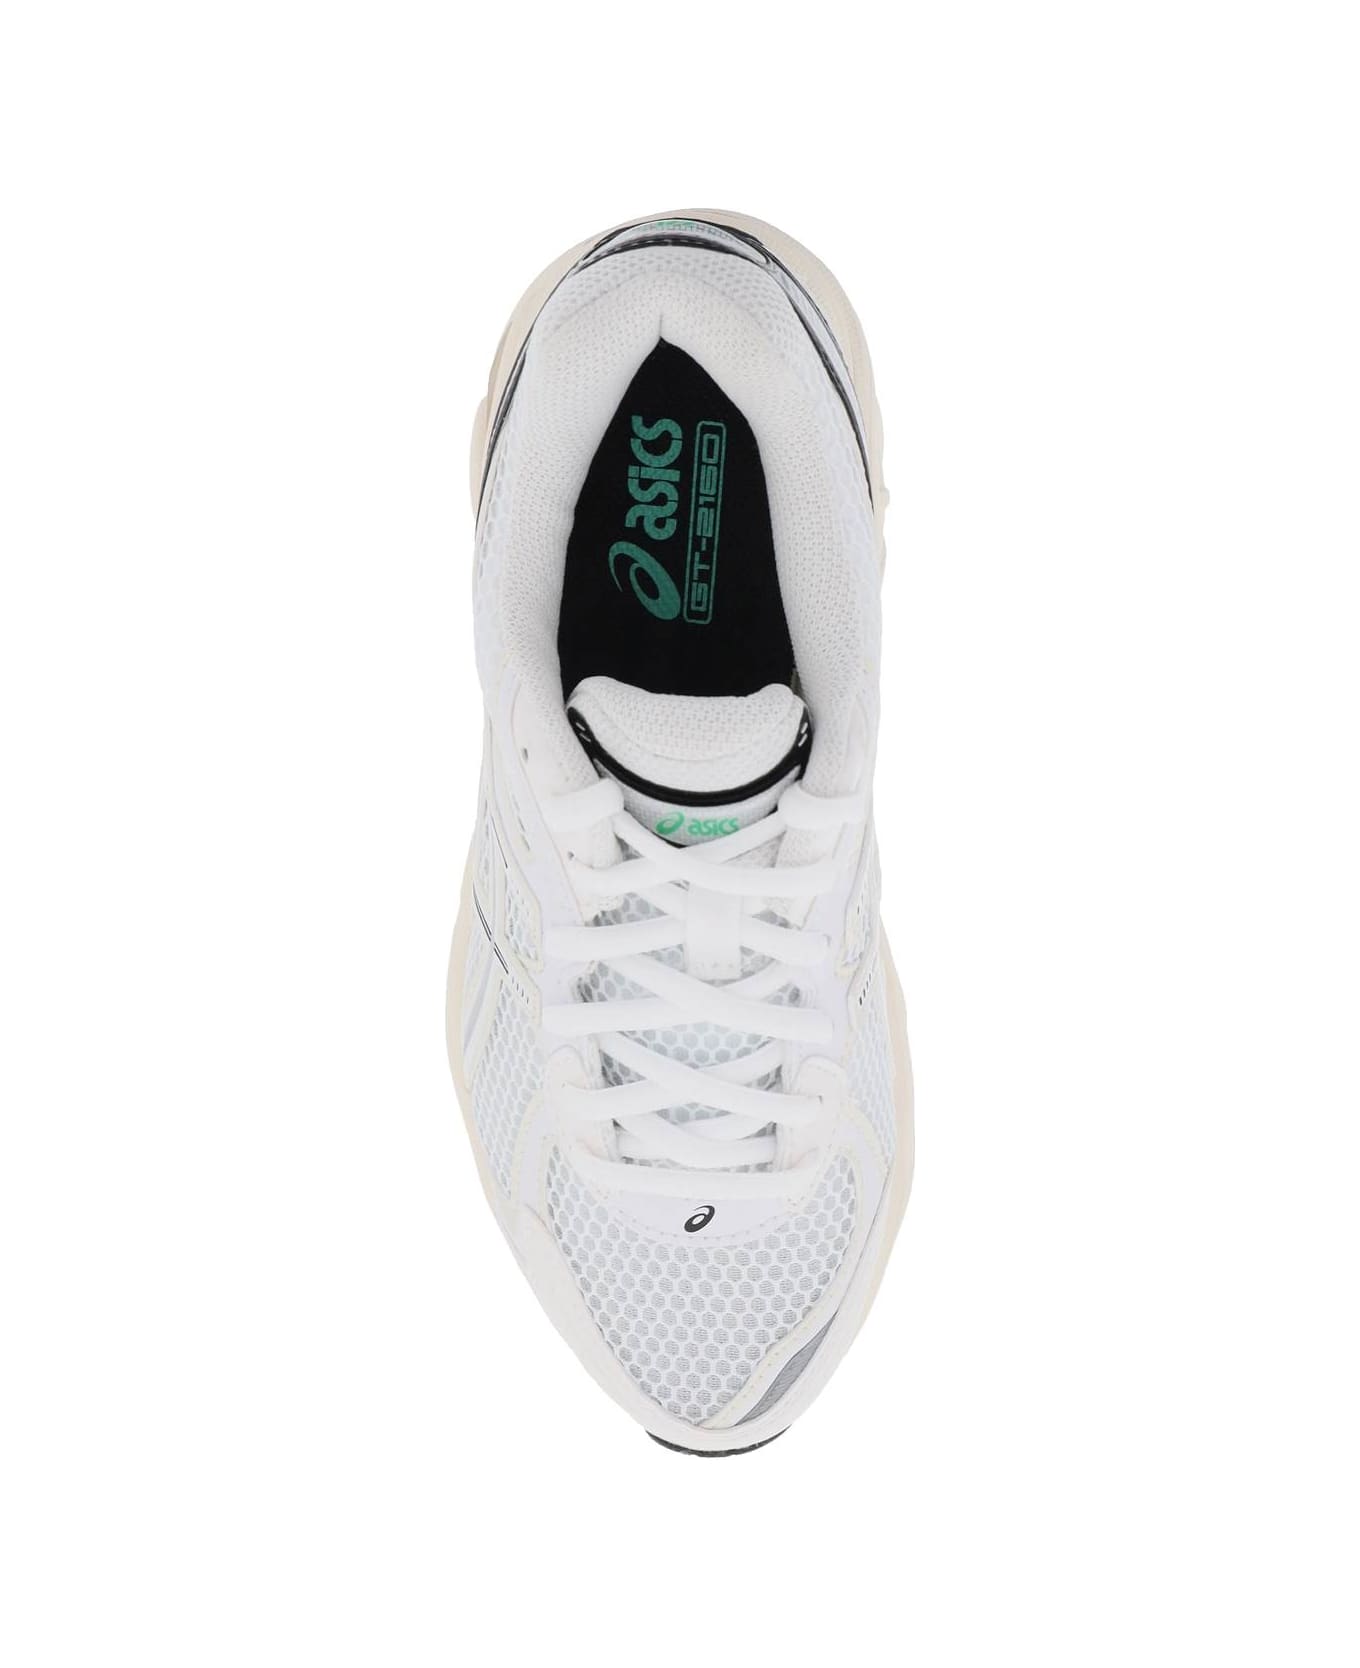 Asics Gt-2160 Sneakers - WHITE BLACK (White) スニーカー